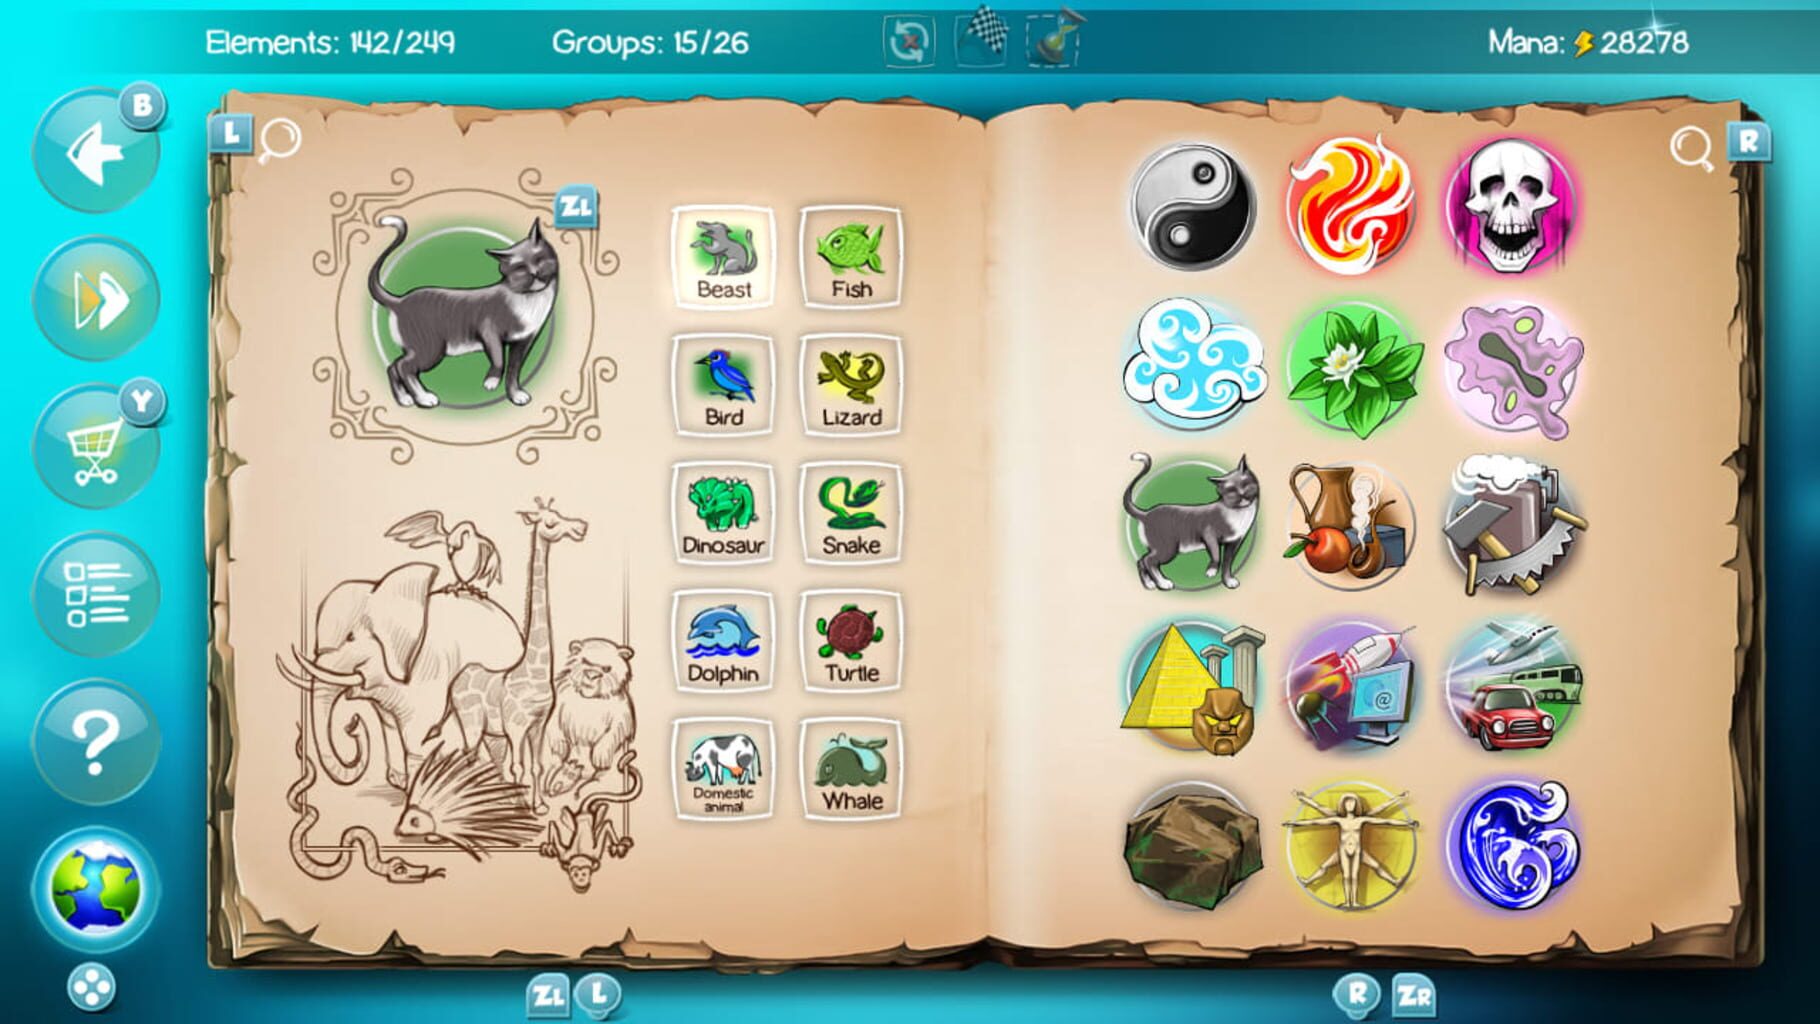 Doodle God: Evolution screenshot